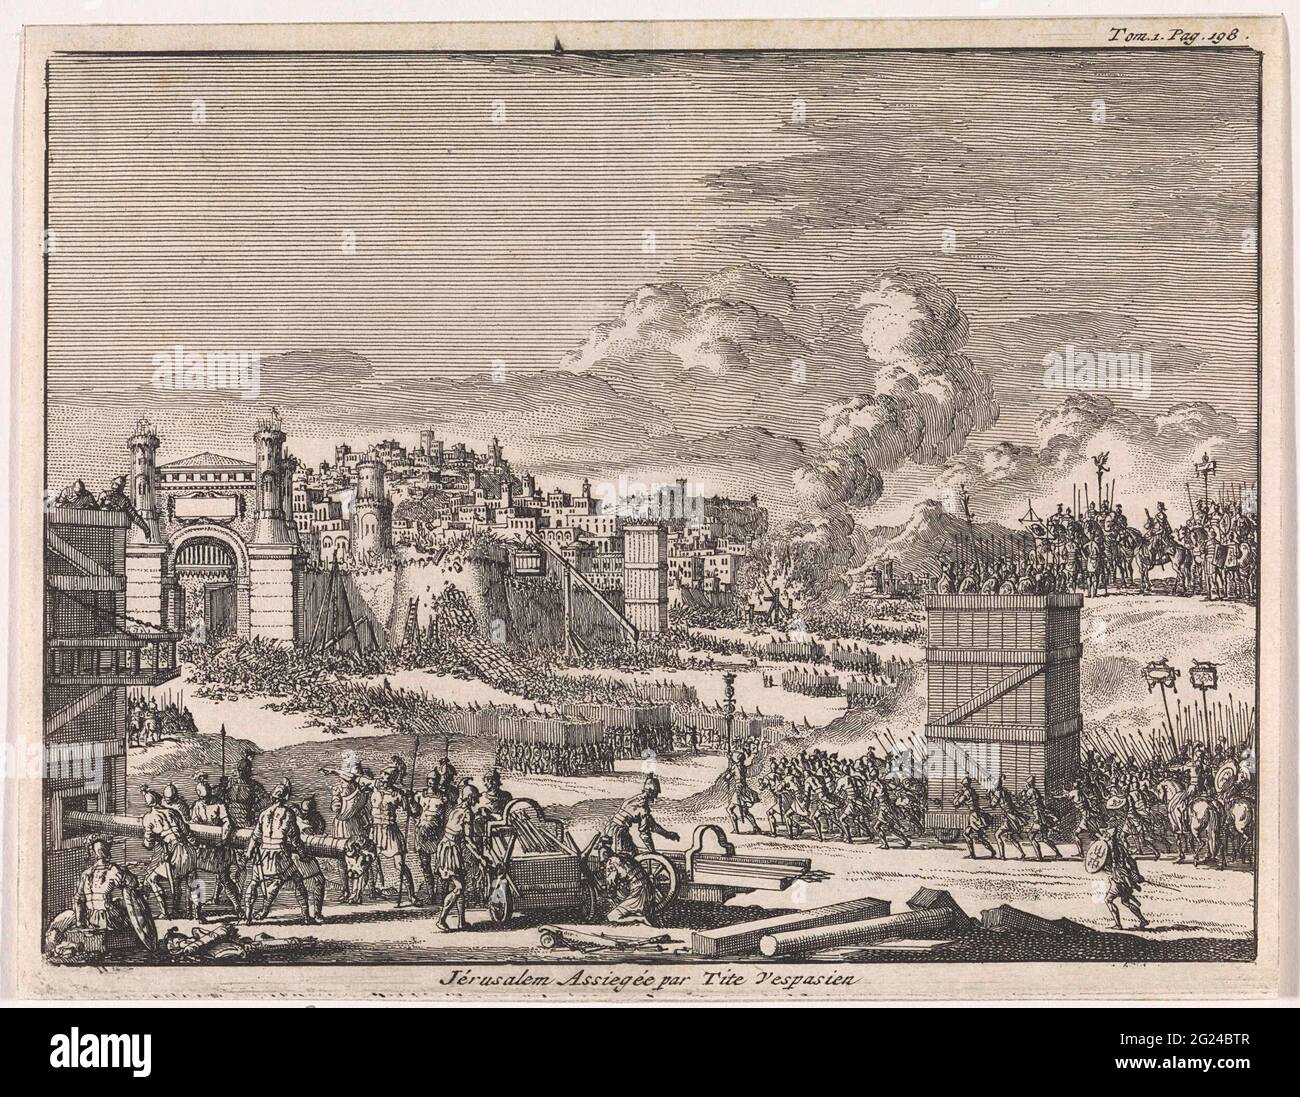 Jerusalem wird von Titus belagert; Jérusalem Assiegeé Par Tite Vespasien. Stockfoto